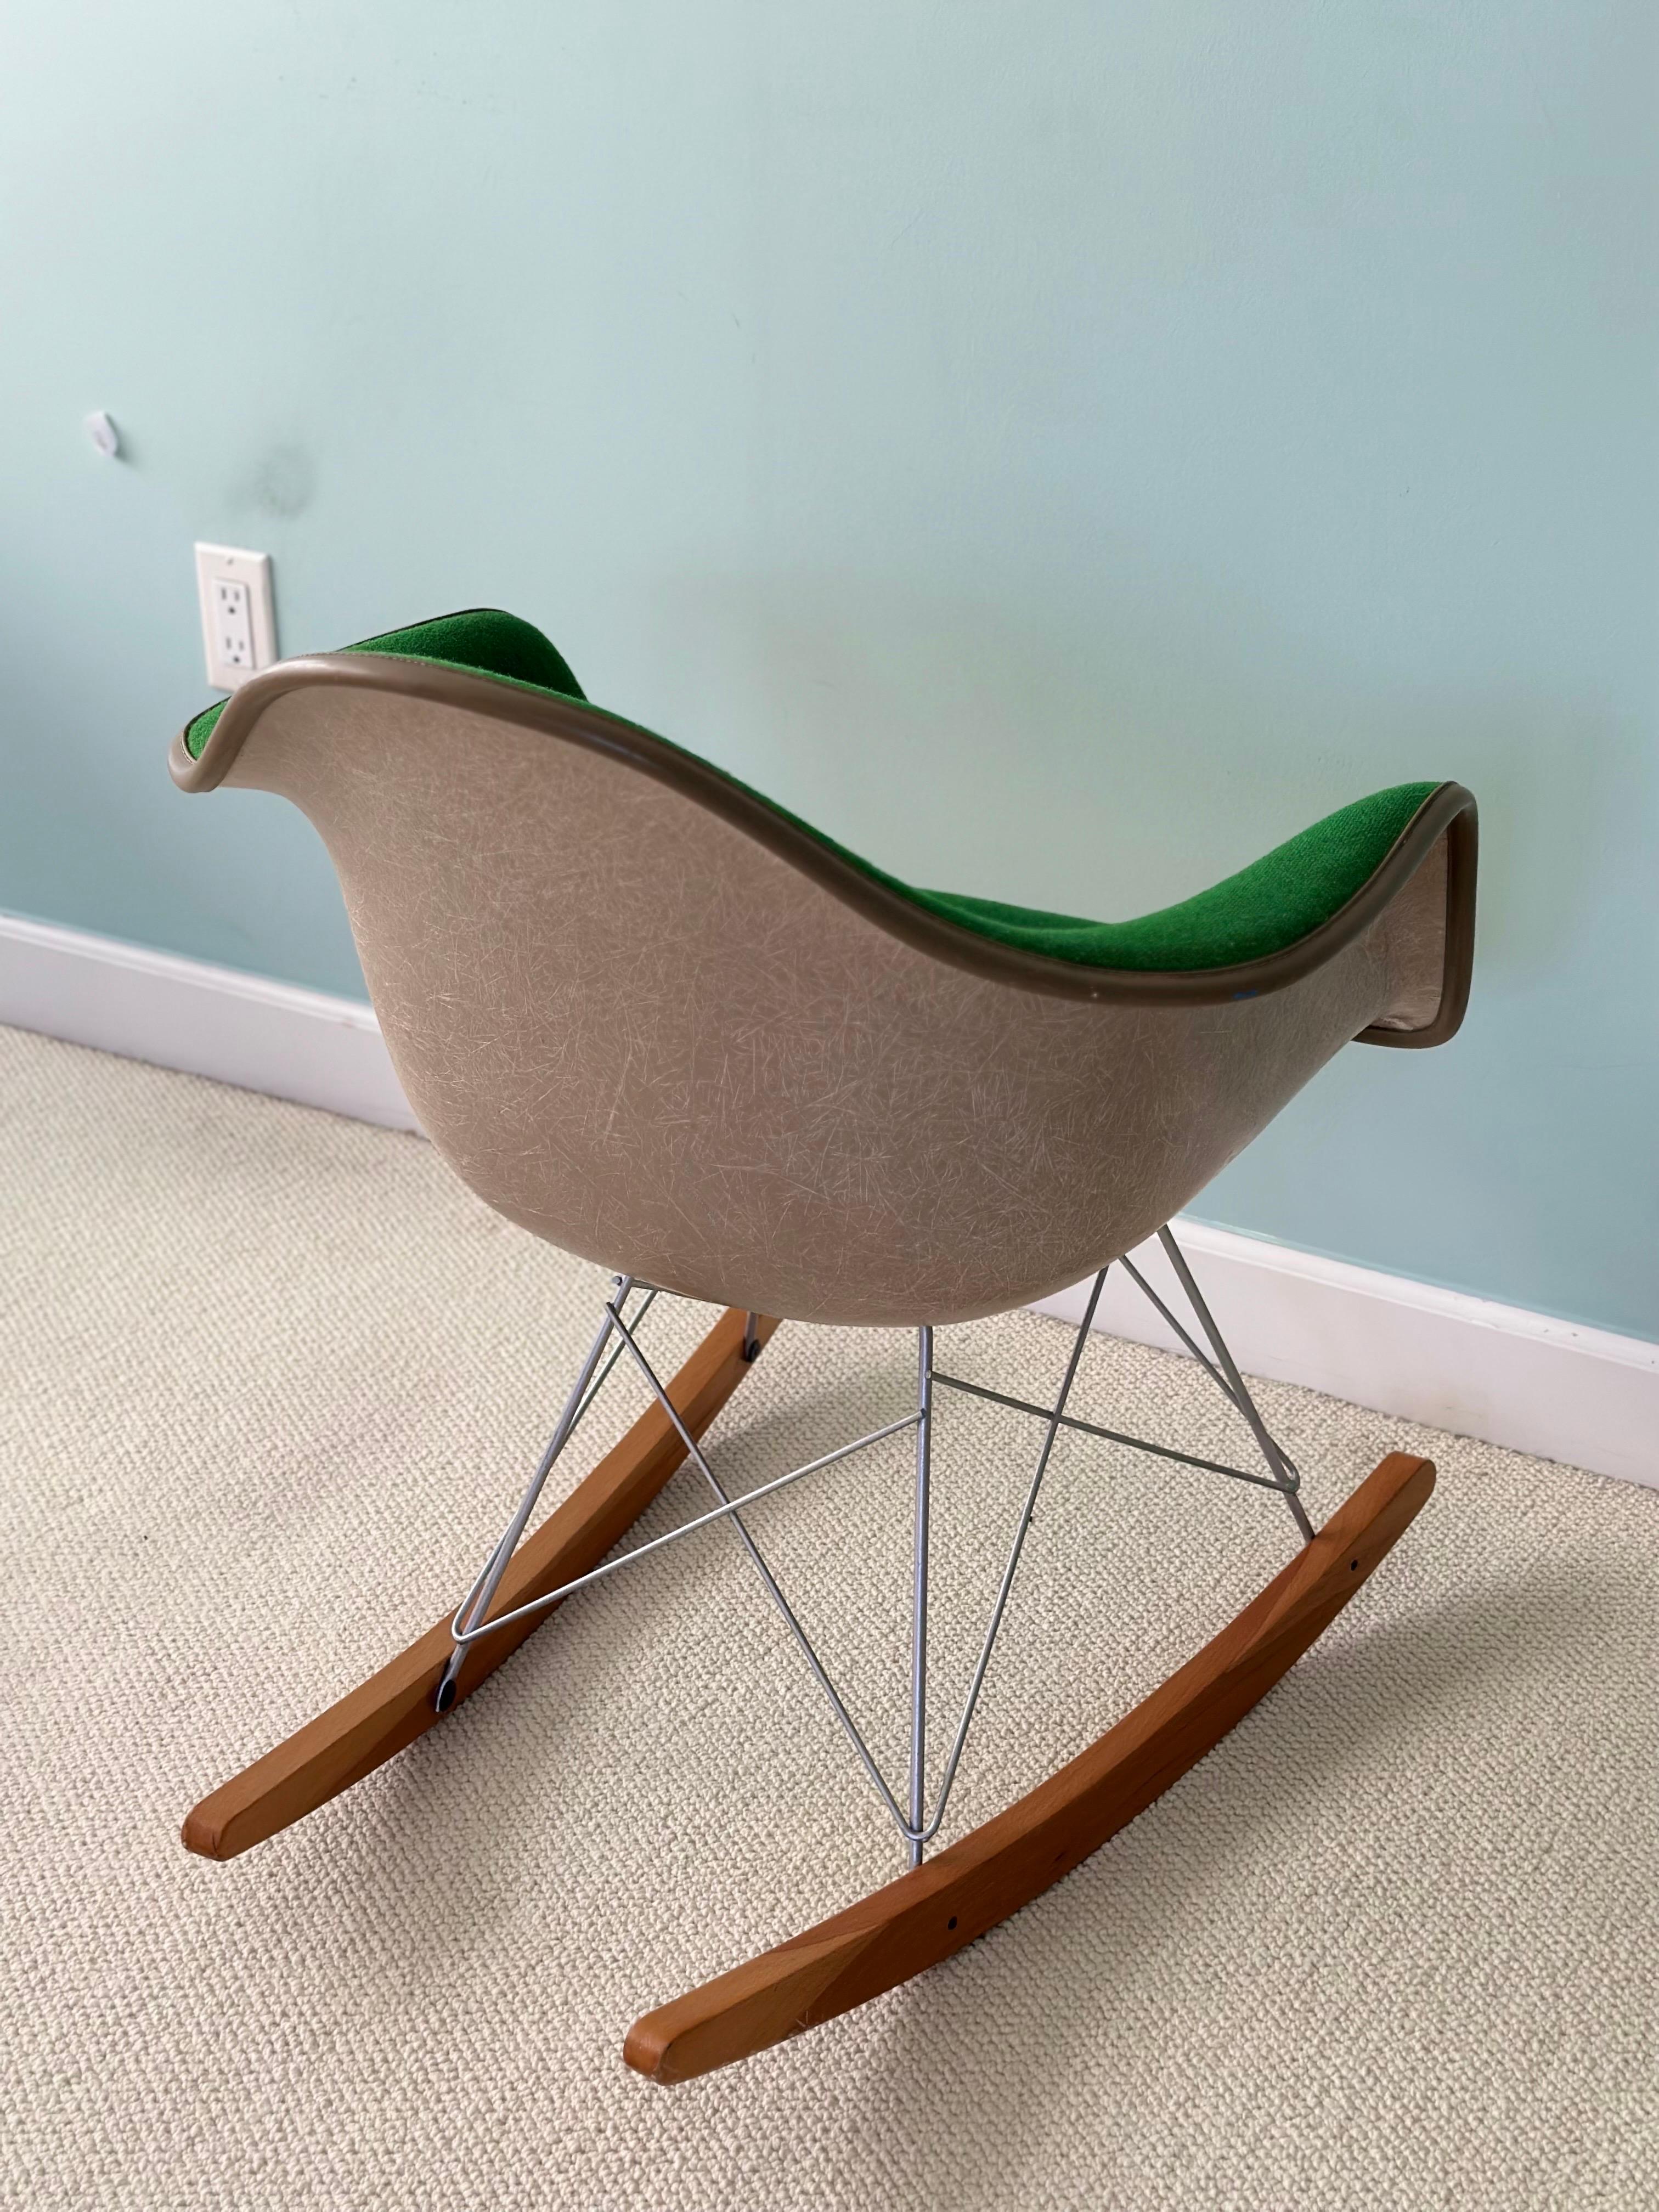 1970s RAR Eames for Herman Miller Fiberglass and Green Upholstery Rocker Chair  For Sale 2